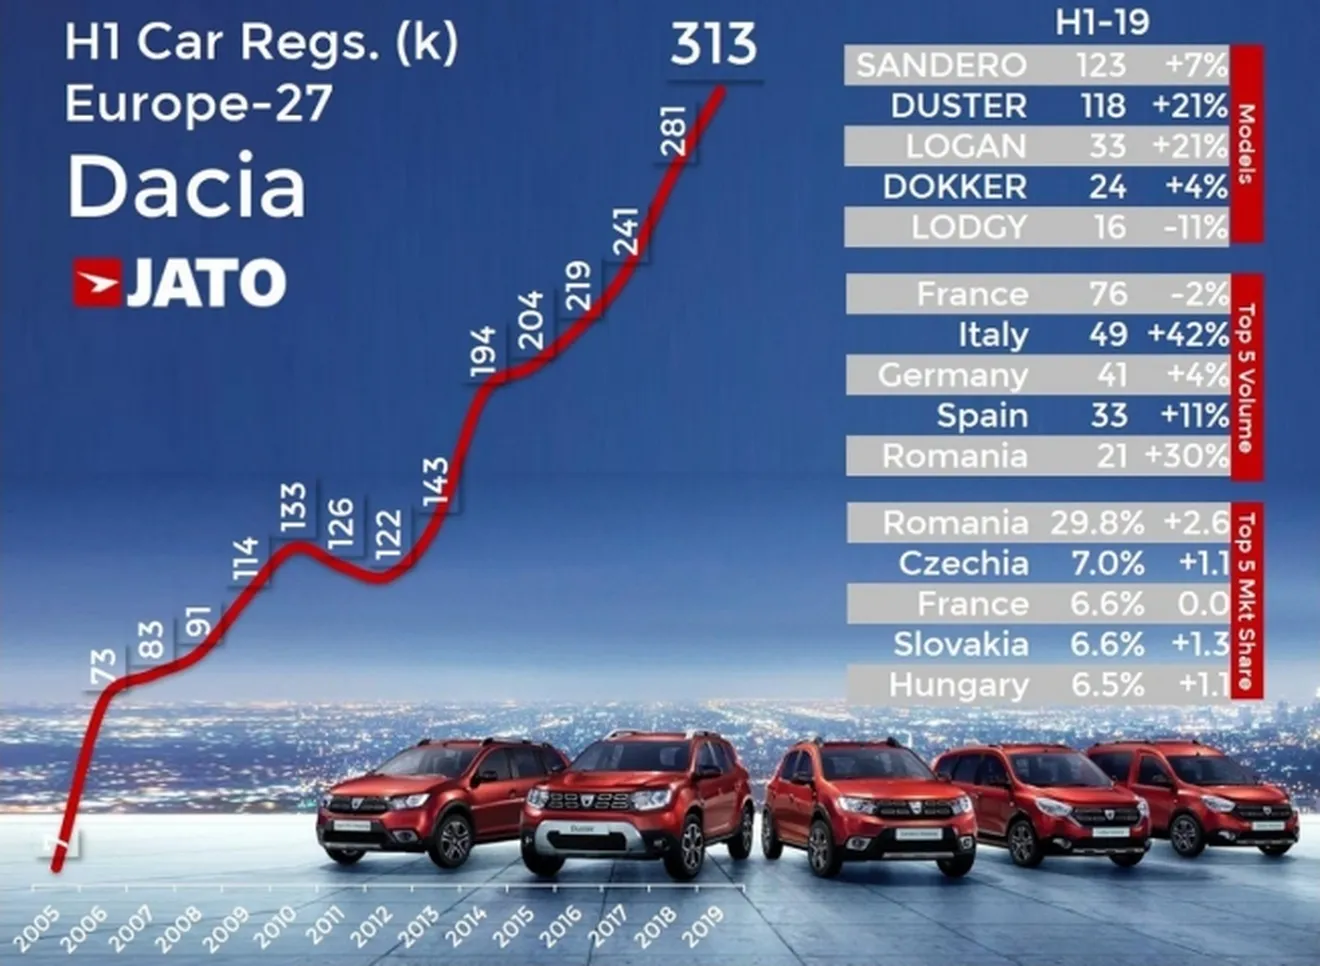 Ventas de Dacia en Europa en el primer semestre de 2019